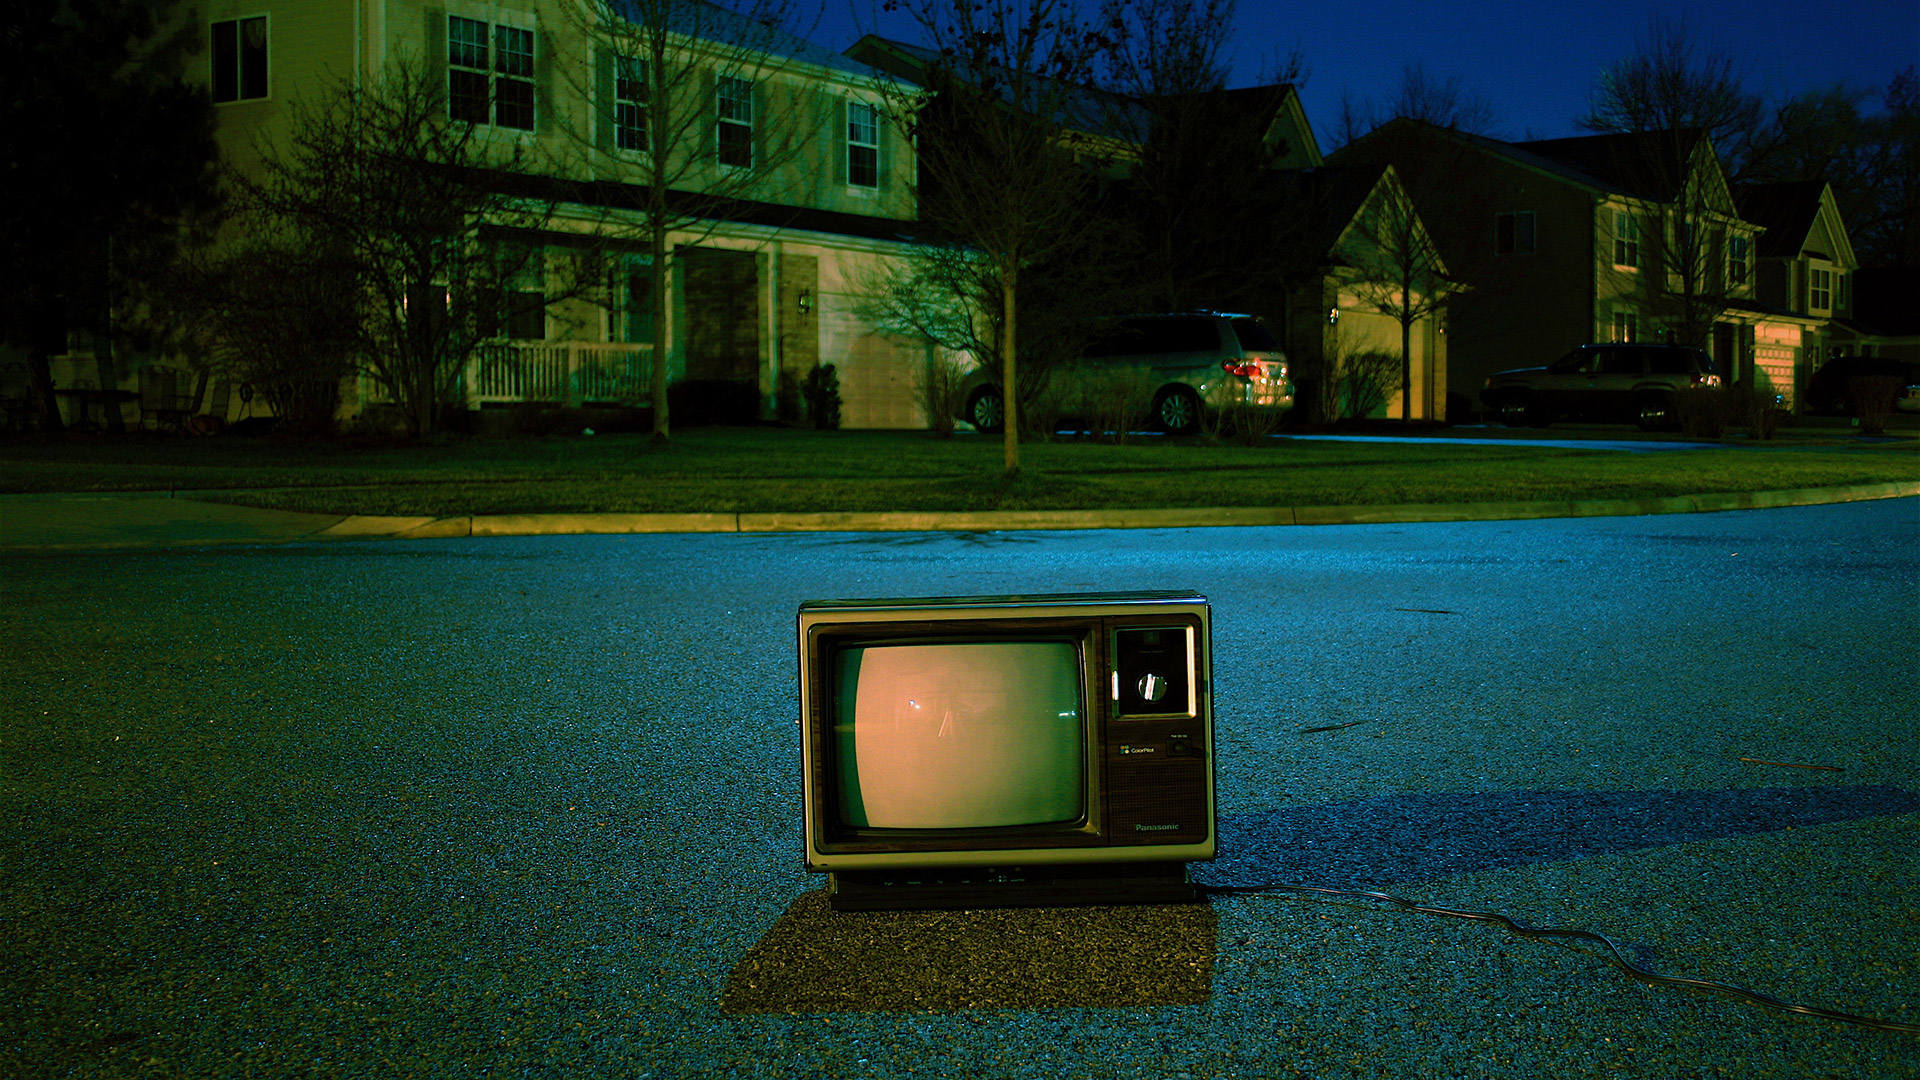 Falls Ihr noch einen alten CRT-Fernseher habt, wird es Zeit für einen Wechsel in die 4K-Welt